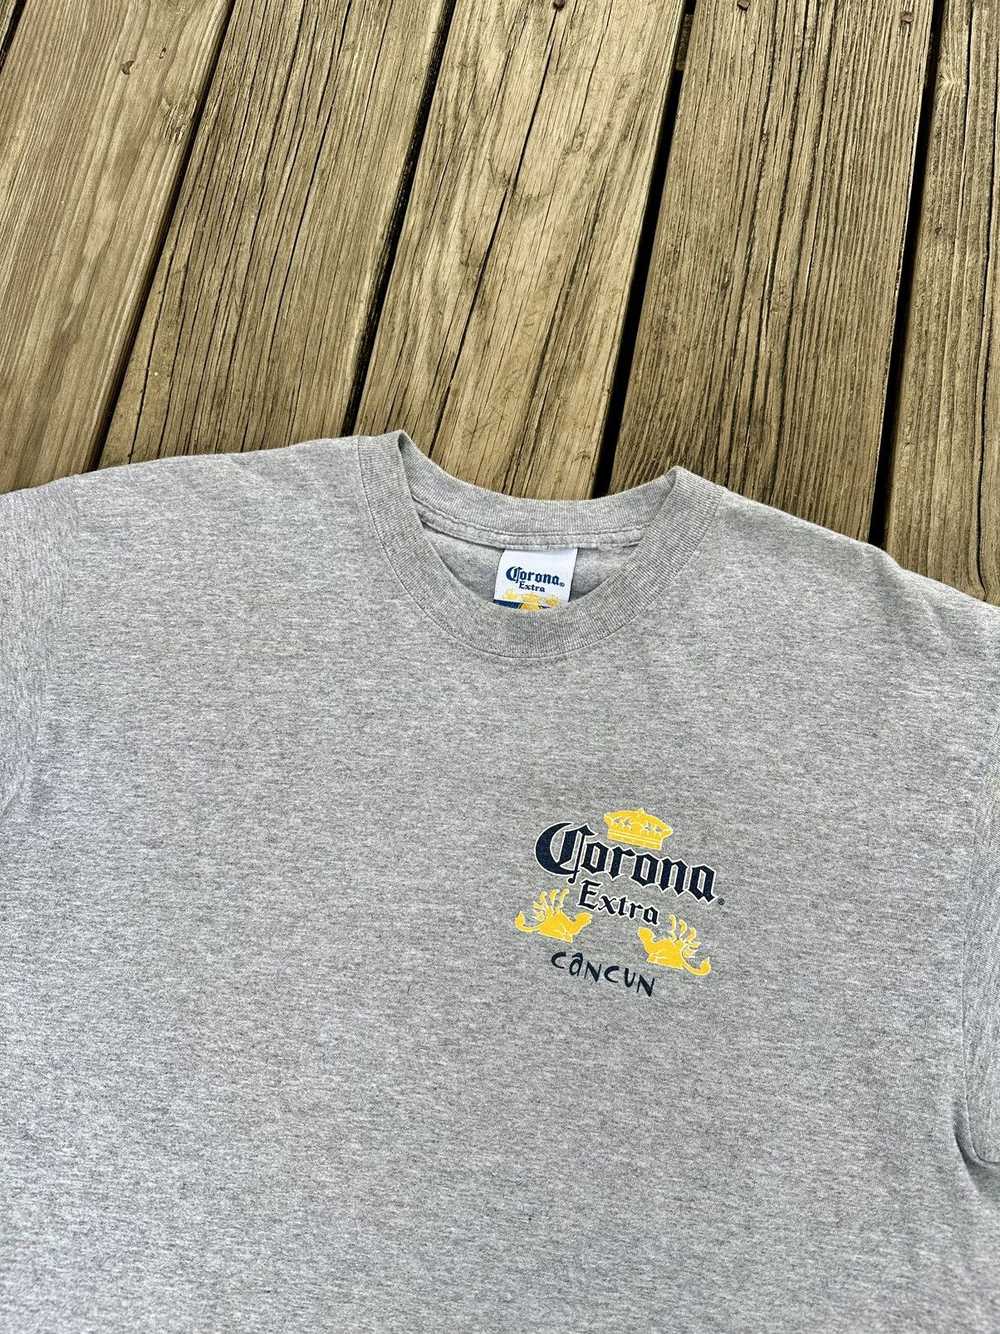 Corona Corona Extra Shirt - image 5